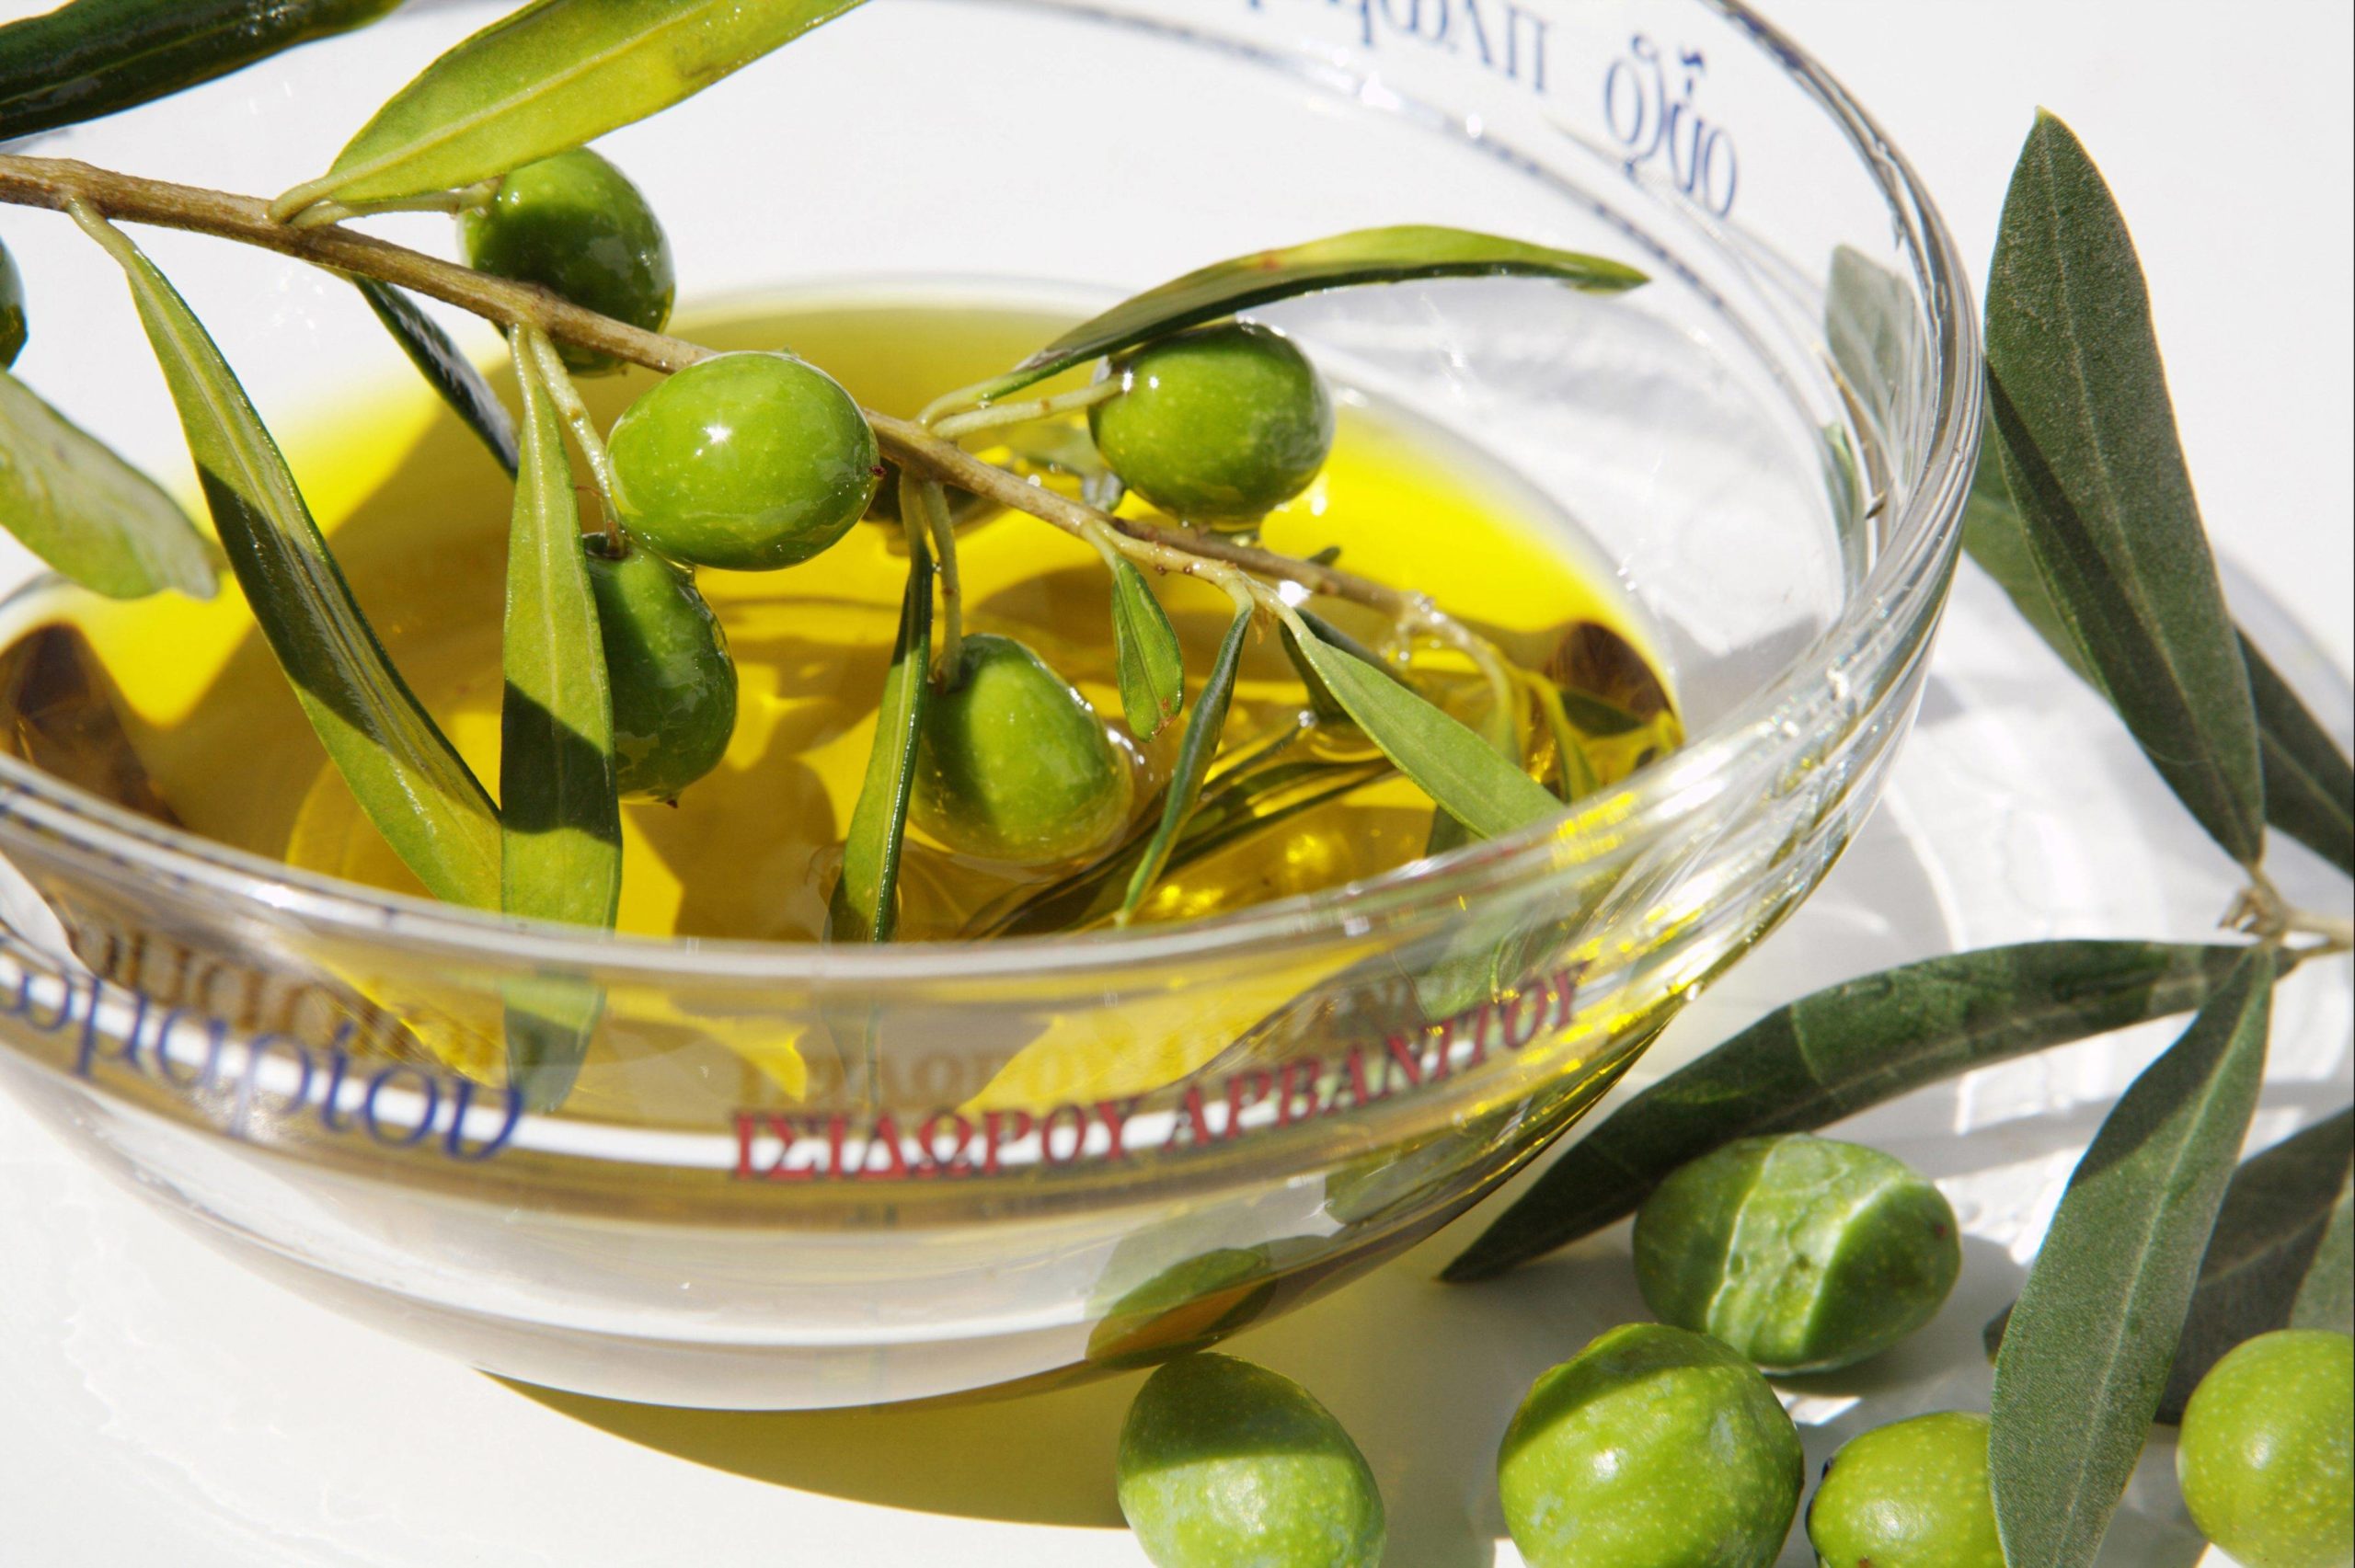 Griechenland in Berlin Bei Pikilia in Schöneberg stammt das Olivenöl aus der familieneigenen Produktion aus Kalamata. Für diesen sonnigen Geschmack kommen Berliner:innen aus der ganzen Stadt.